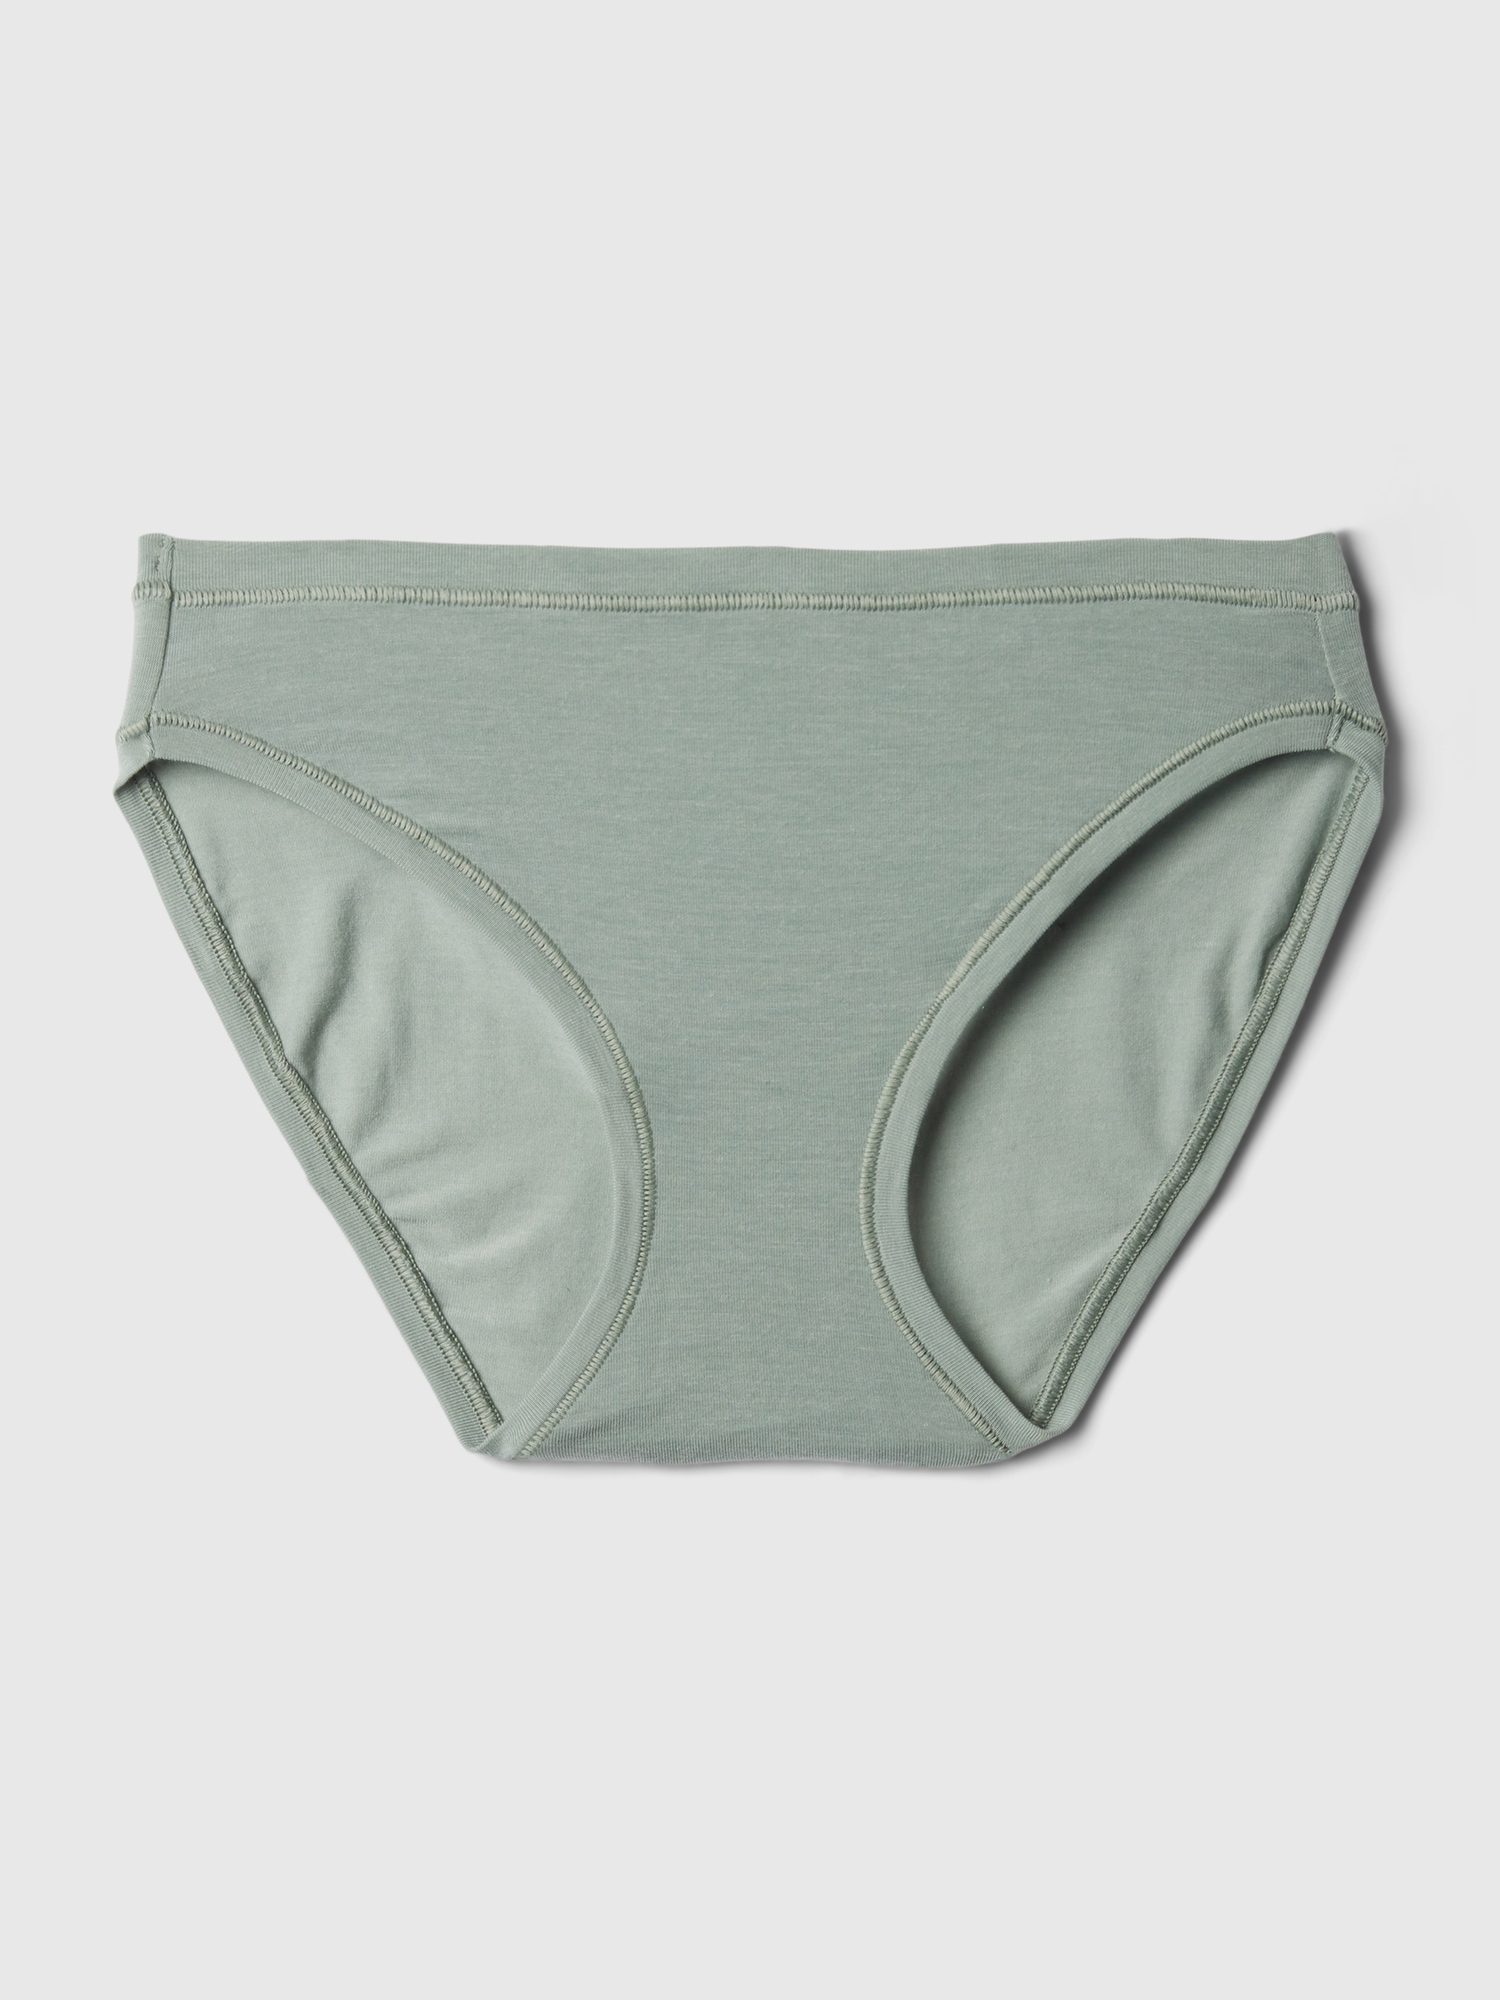 Gap Panties Hipster Stretch Cotton Women`s Panty Undies Underwear